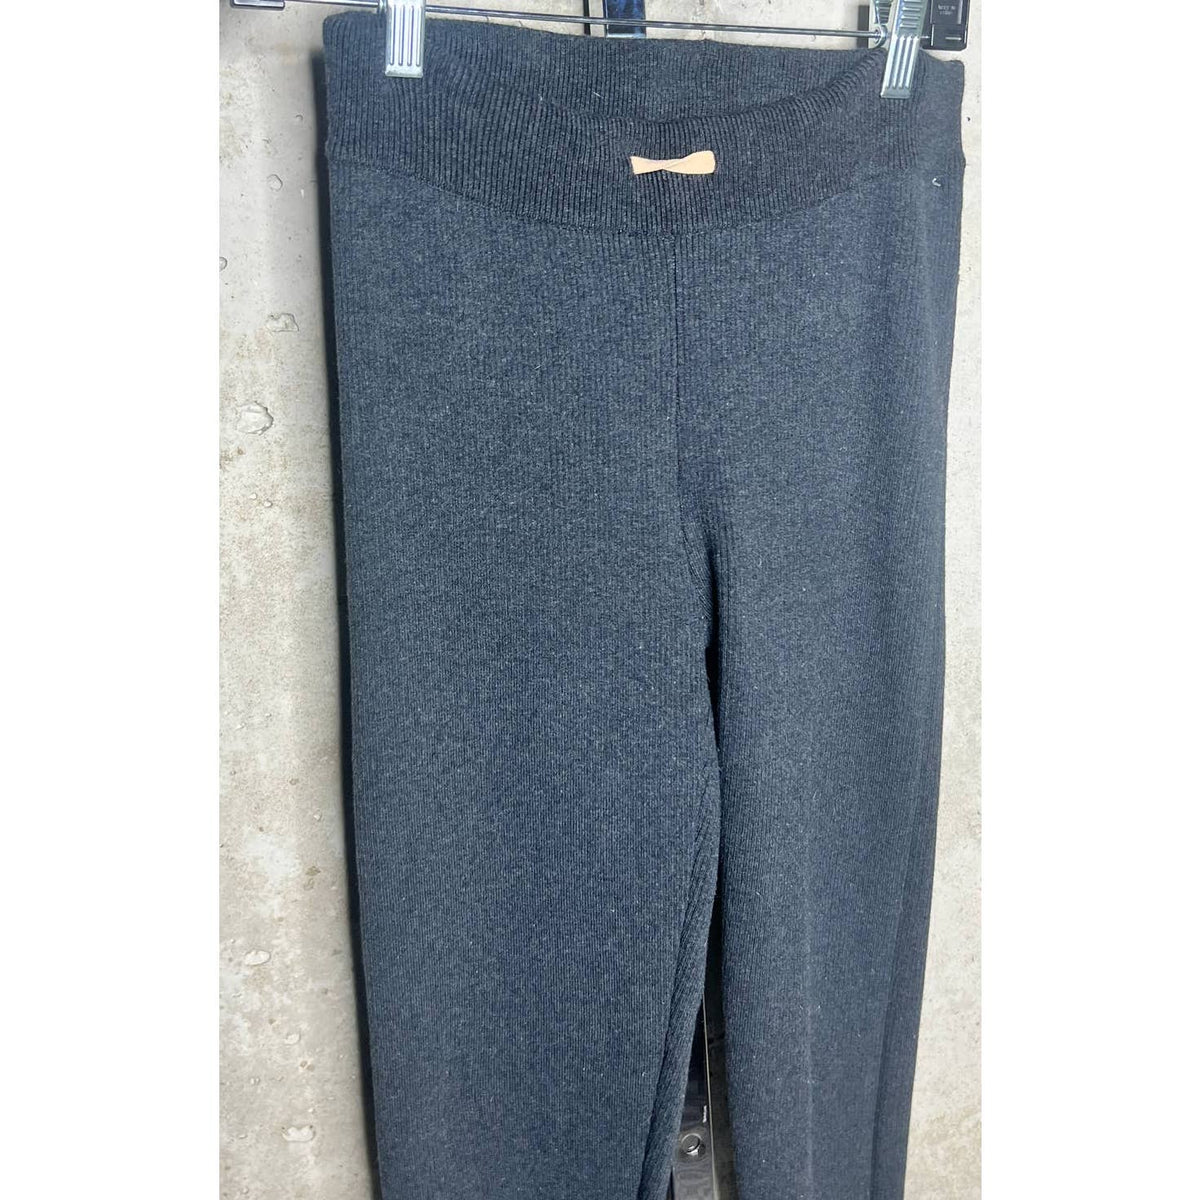 Lunya Grey Knit Stretch Pants Sz. L/XL